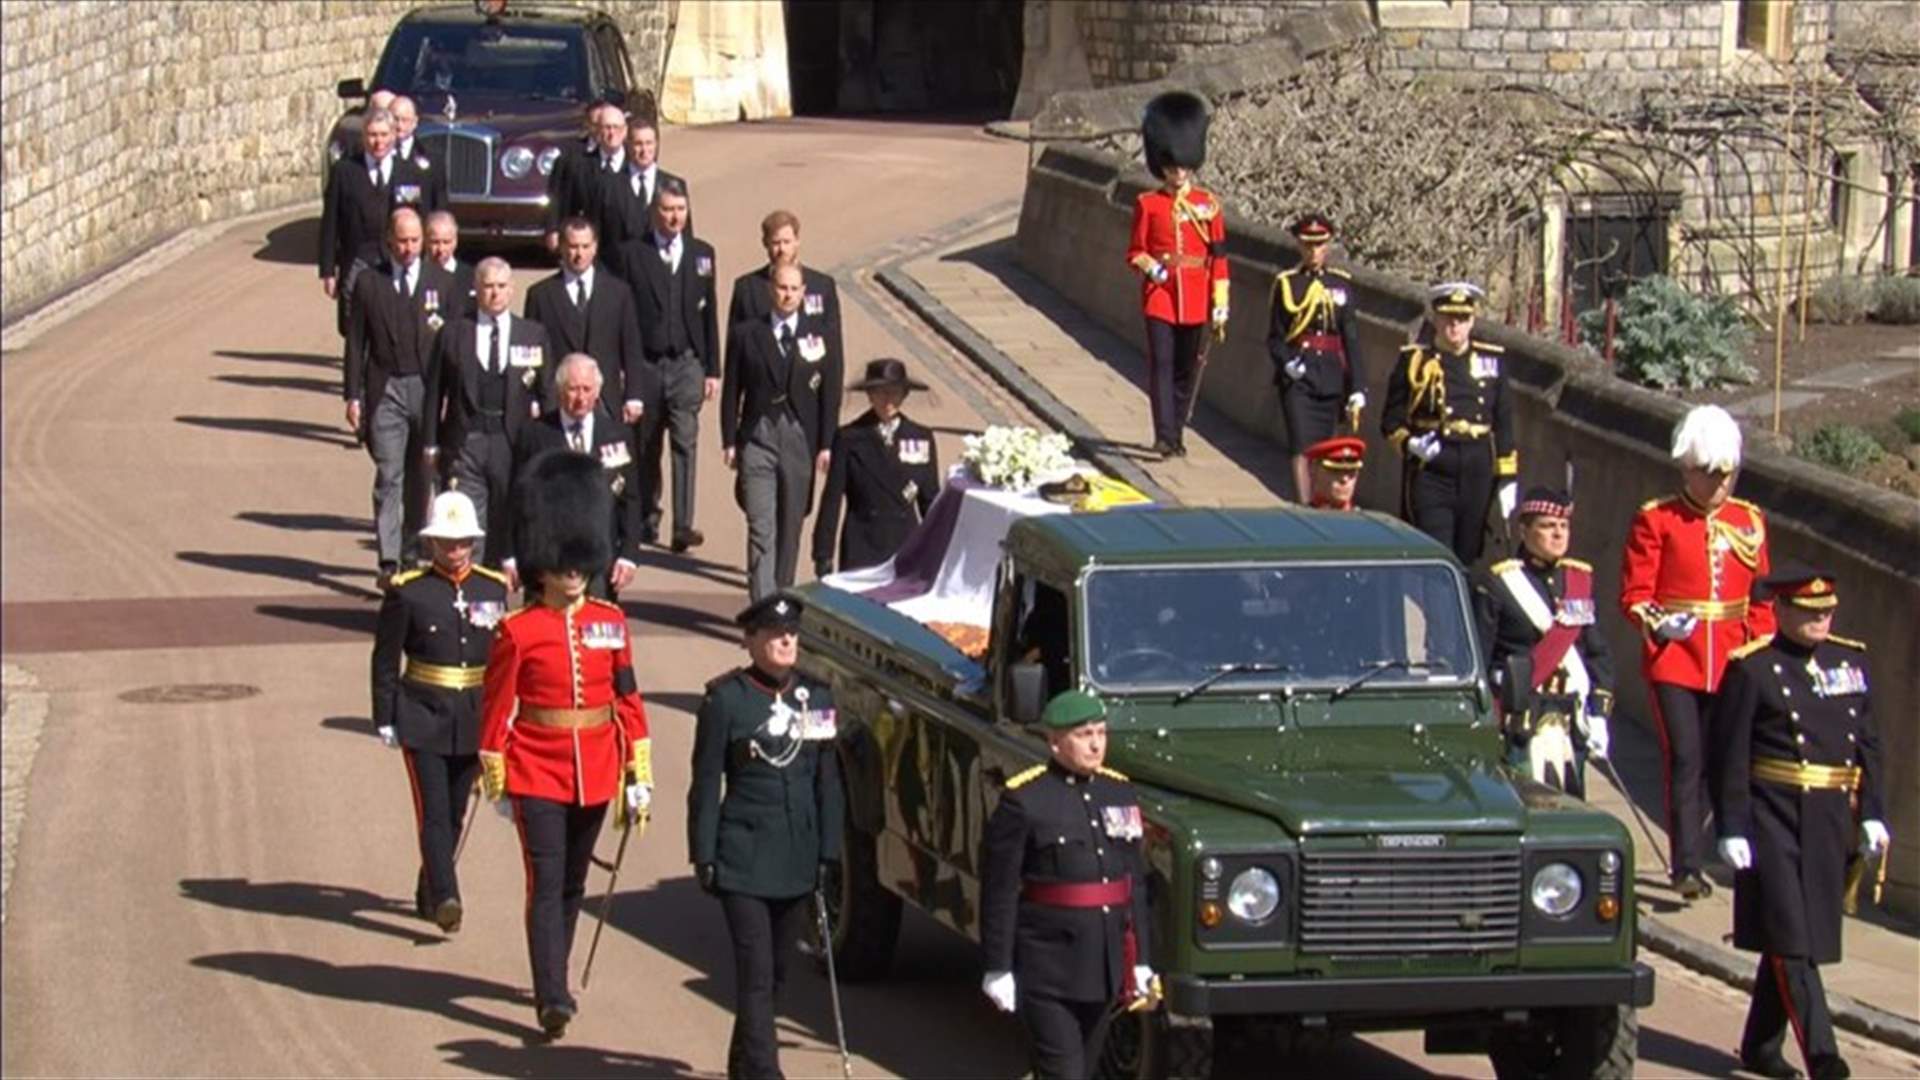 جنازة الأمير فيليب... الملكة إليزابيث تقف وحيدة في الوداع الأخير (صور)